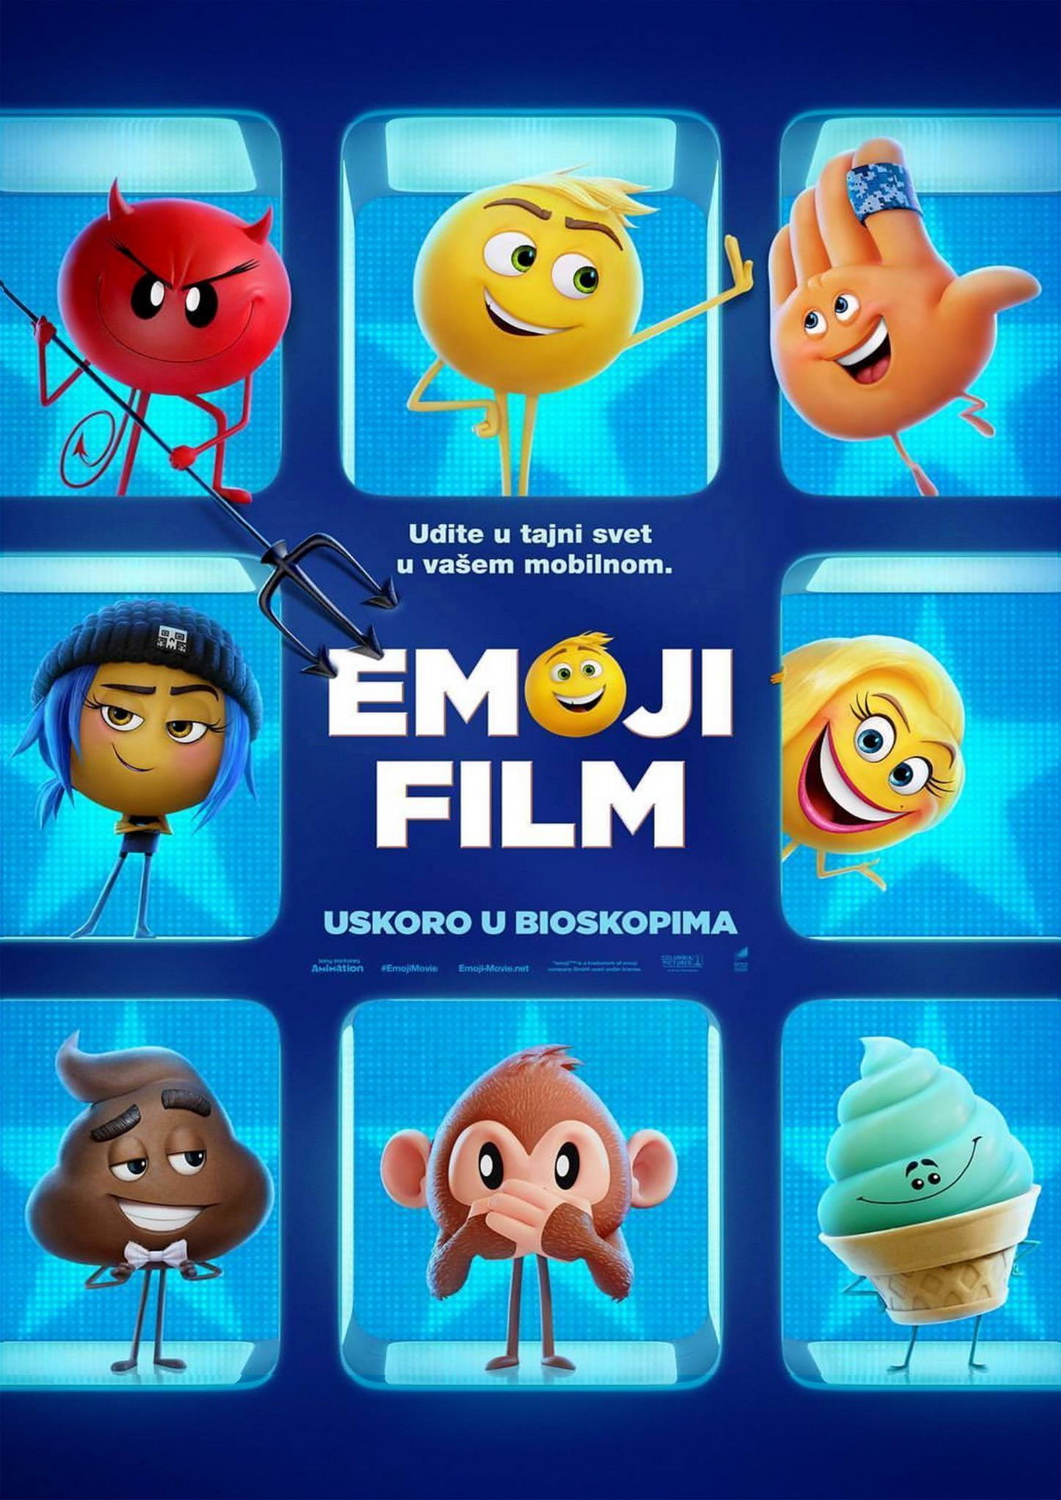 Crtani film „Emoji film“